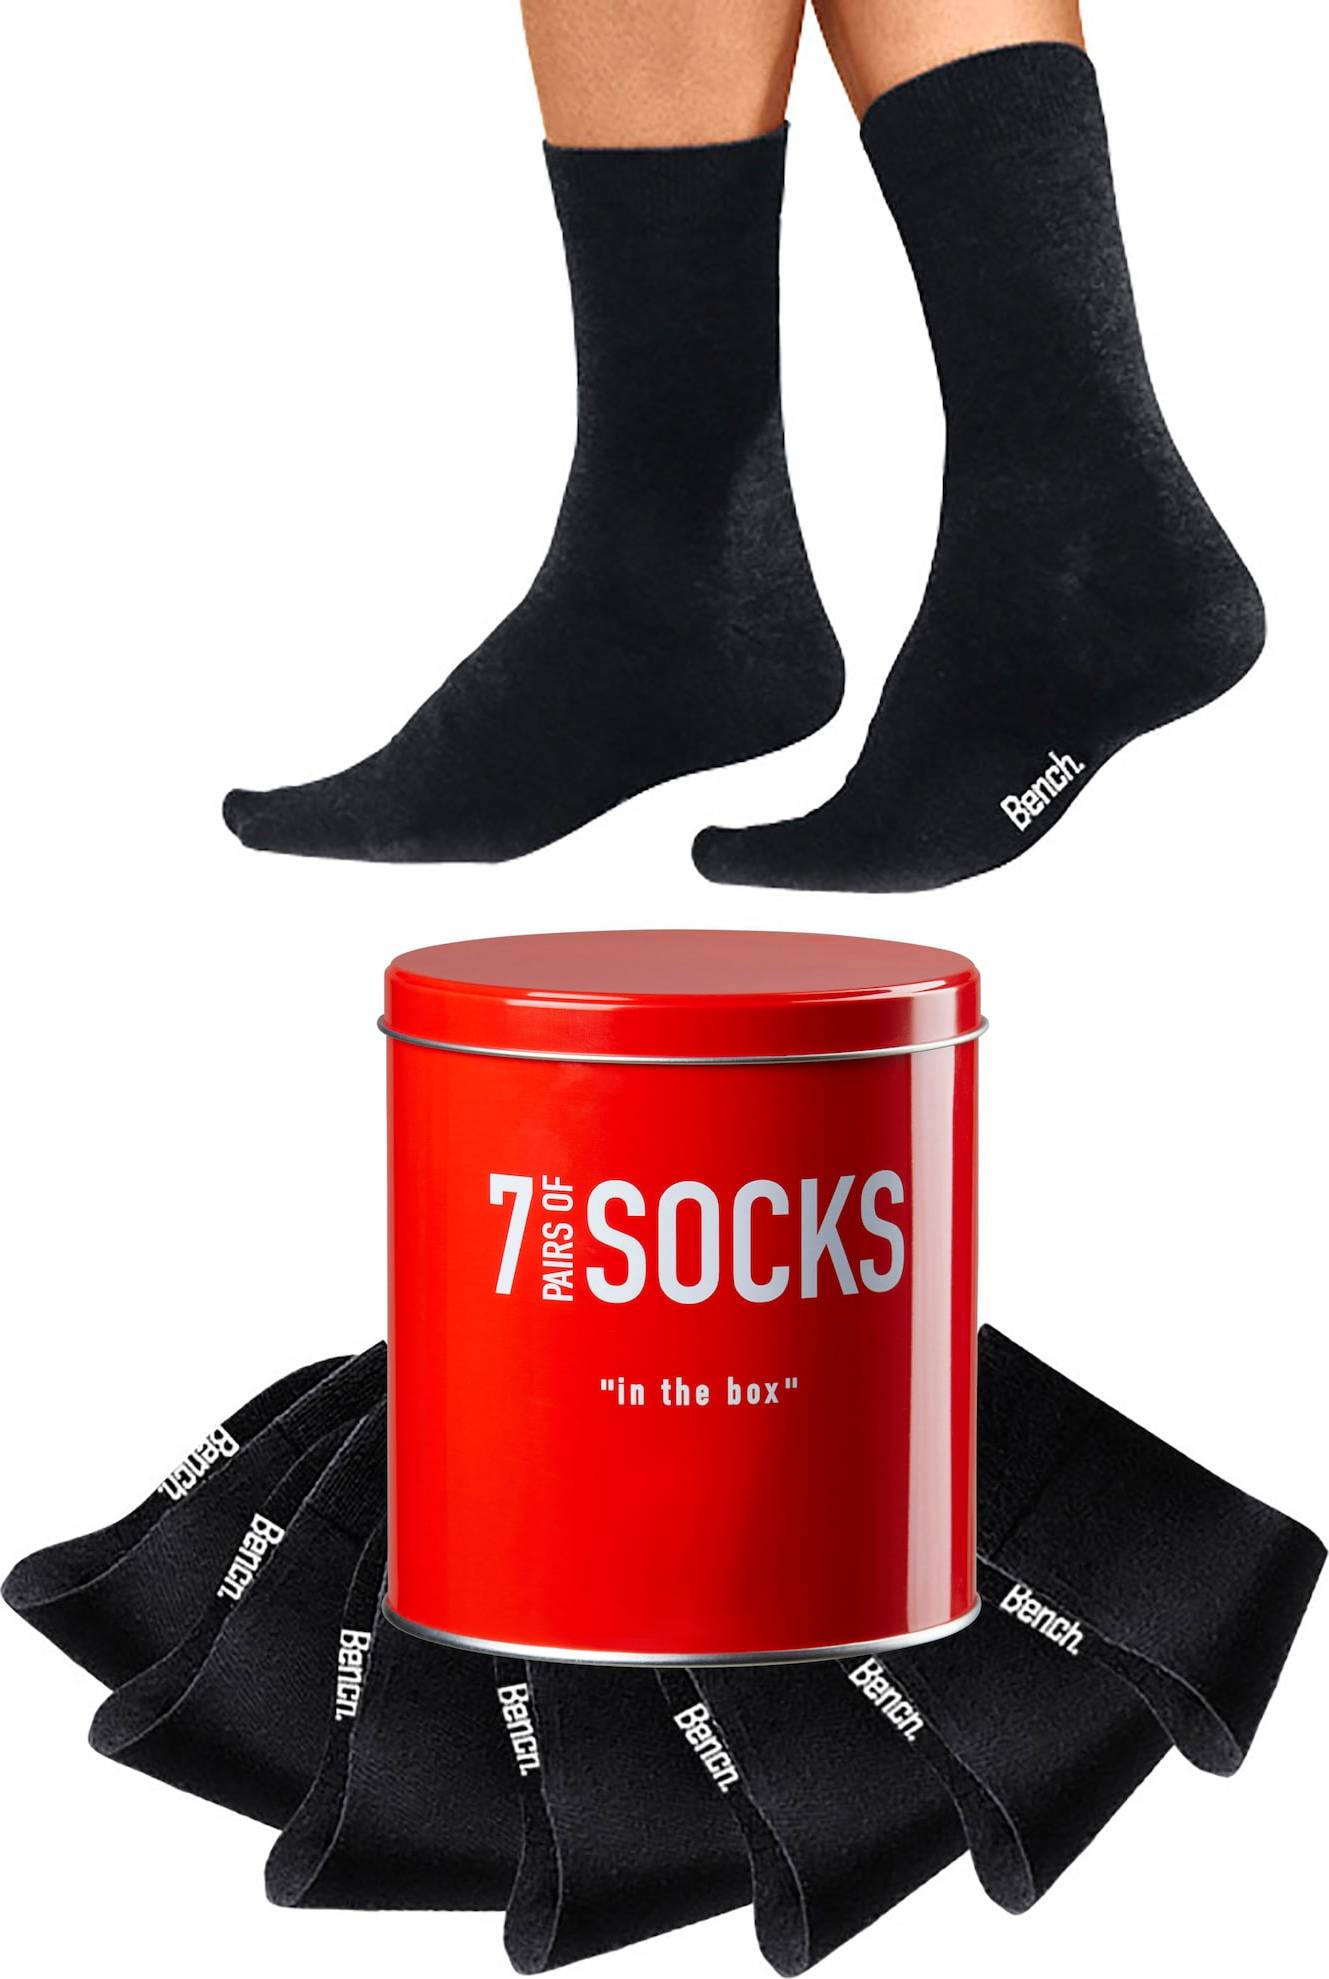 BENCH Ponožky černá